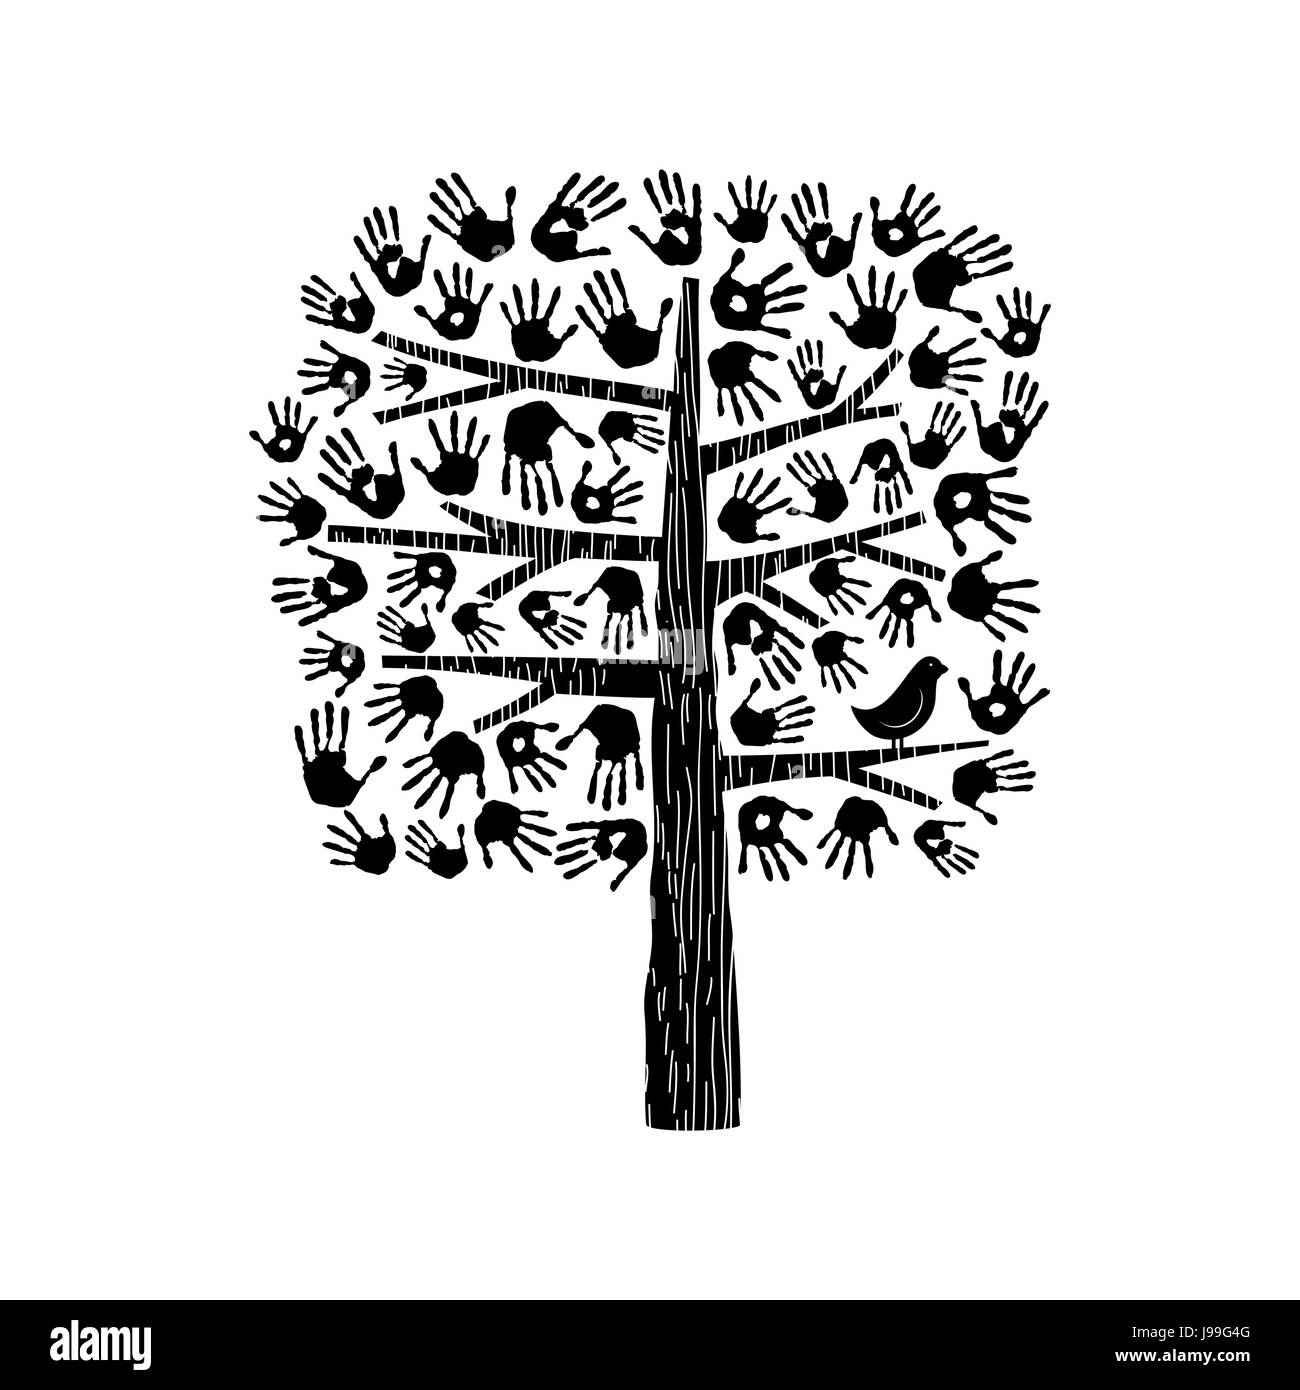 Un coup de main, faites d'arbres de diverses empreintes de mains et d'oiseau. Communauté aide concept illustration. Vecteur EPS10. Illustration de Vecteur